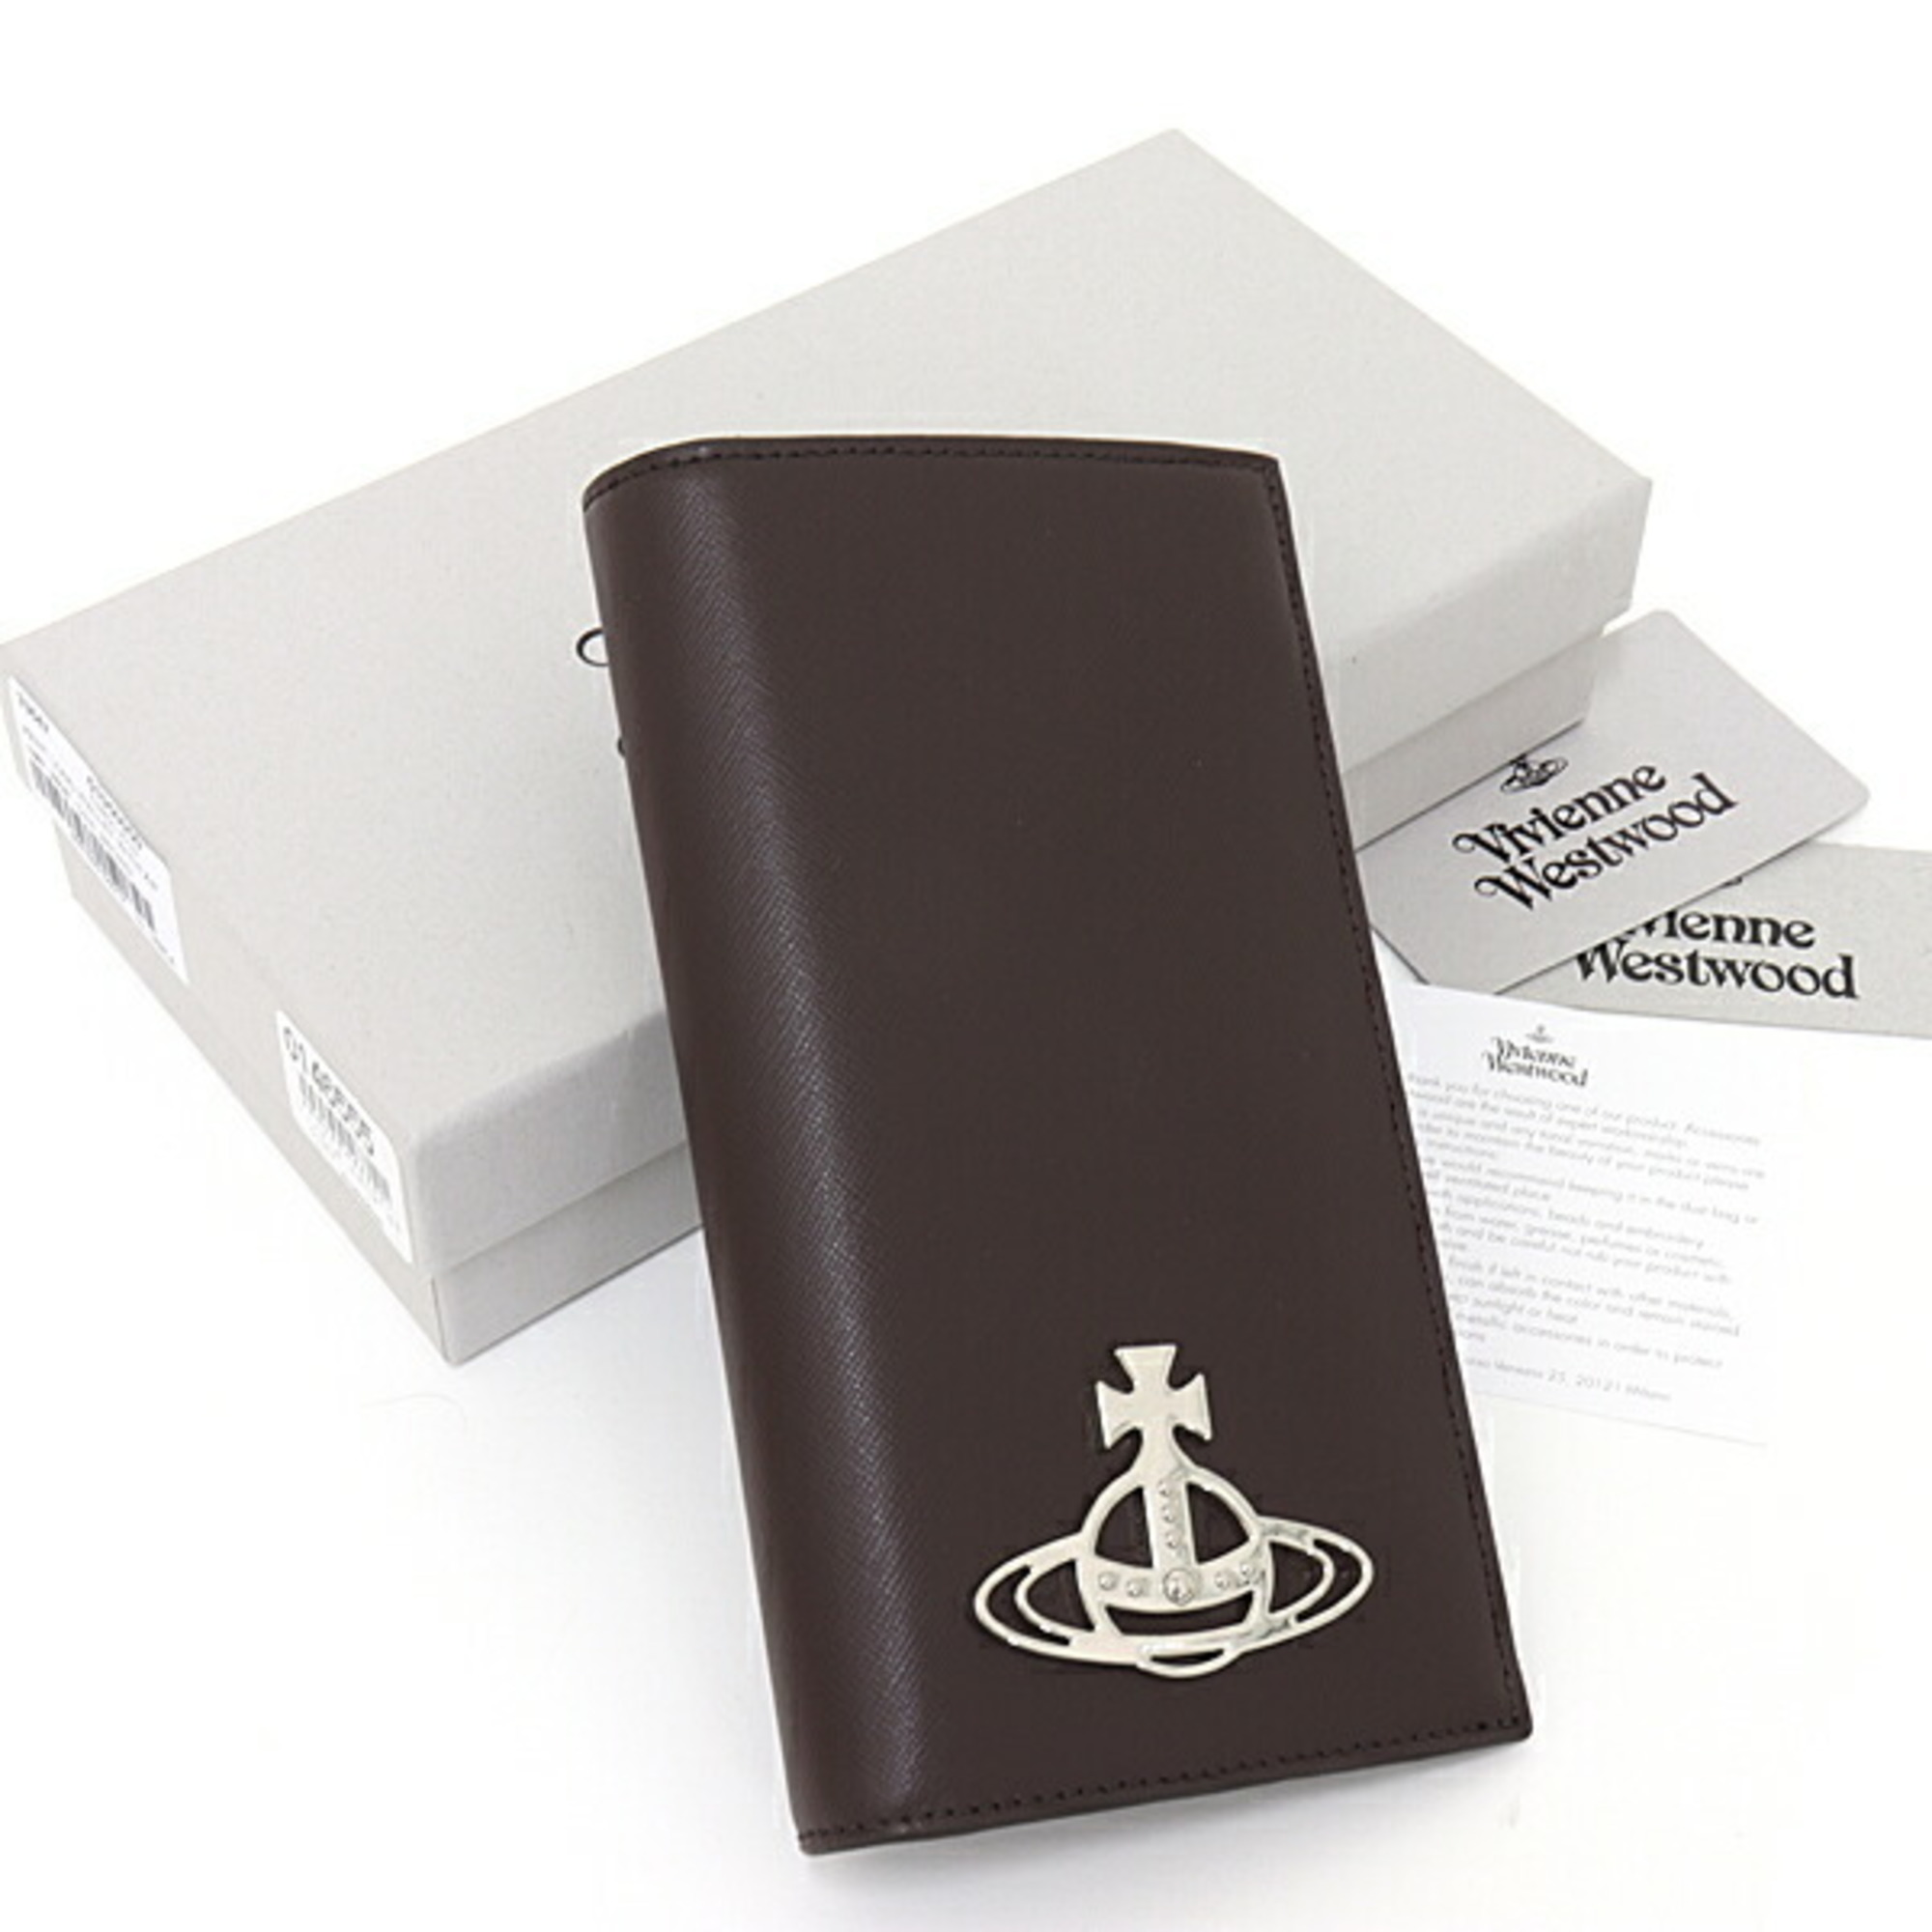 VIVIENNE WESTWOOD Vivienne Westwood long wallet leather 51050050 brown